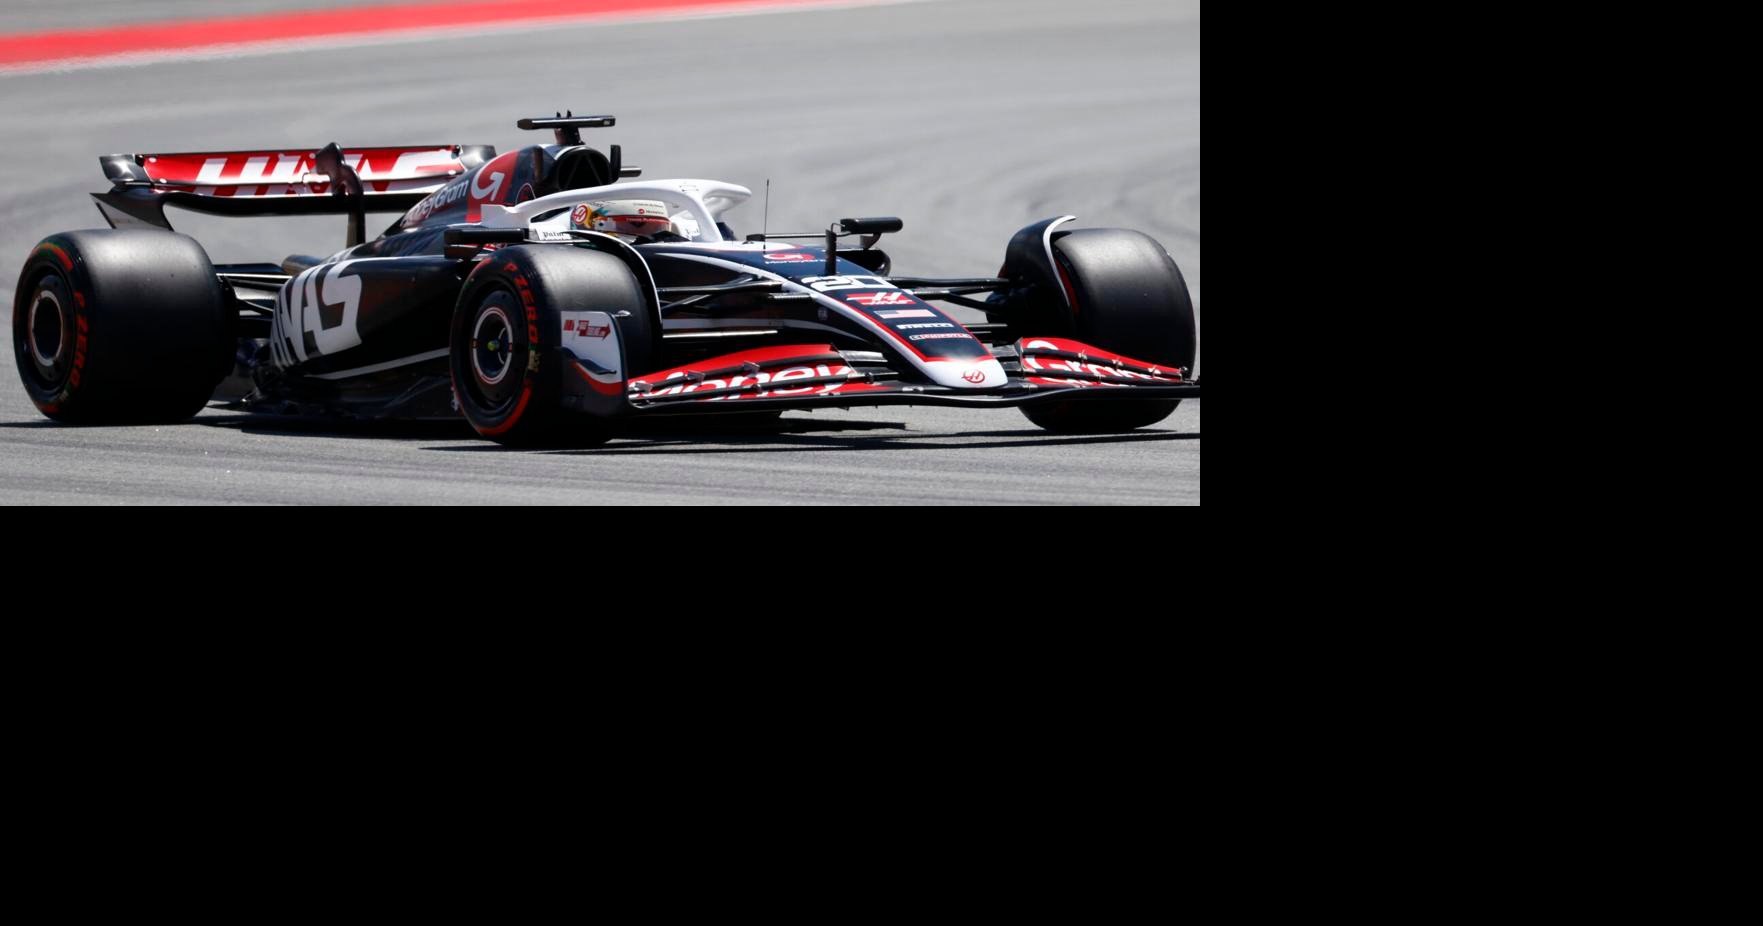 Завершилось арбитражное разбирательство команды Haas F1 Team с бывшим российским спонсором «Уралкалием» |  Виды спорта